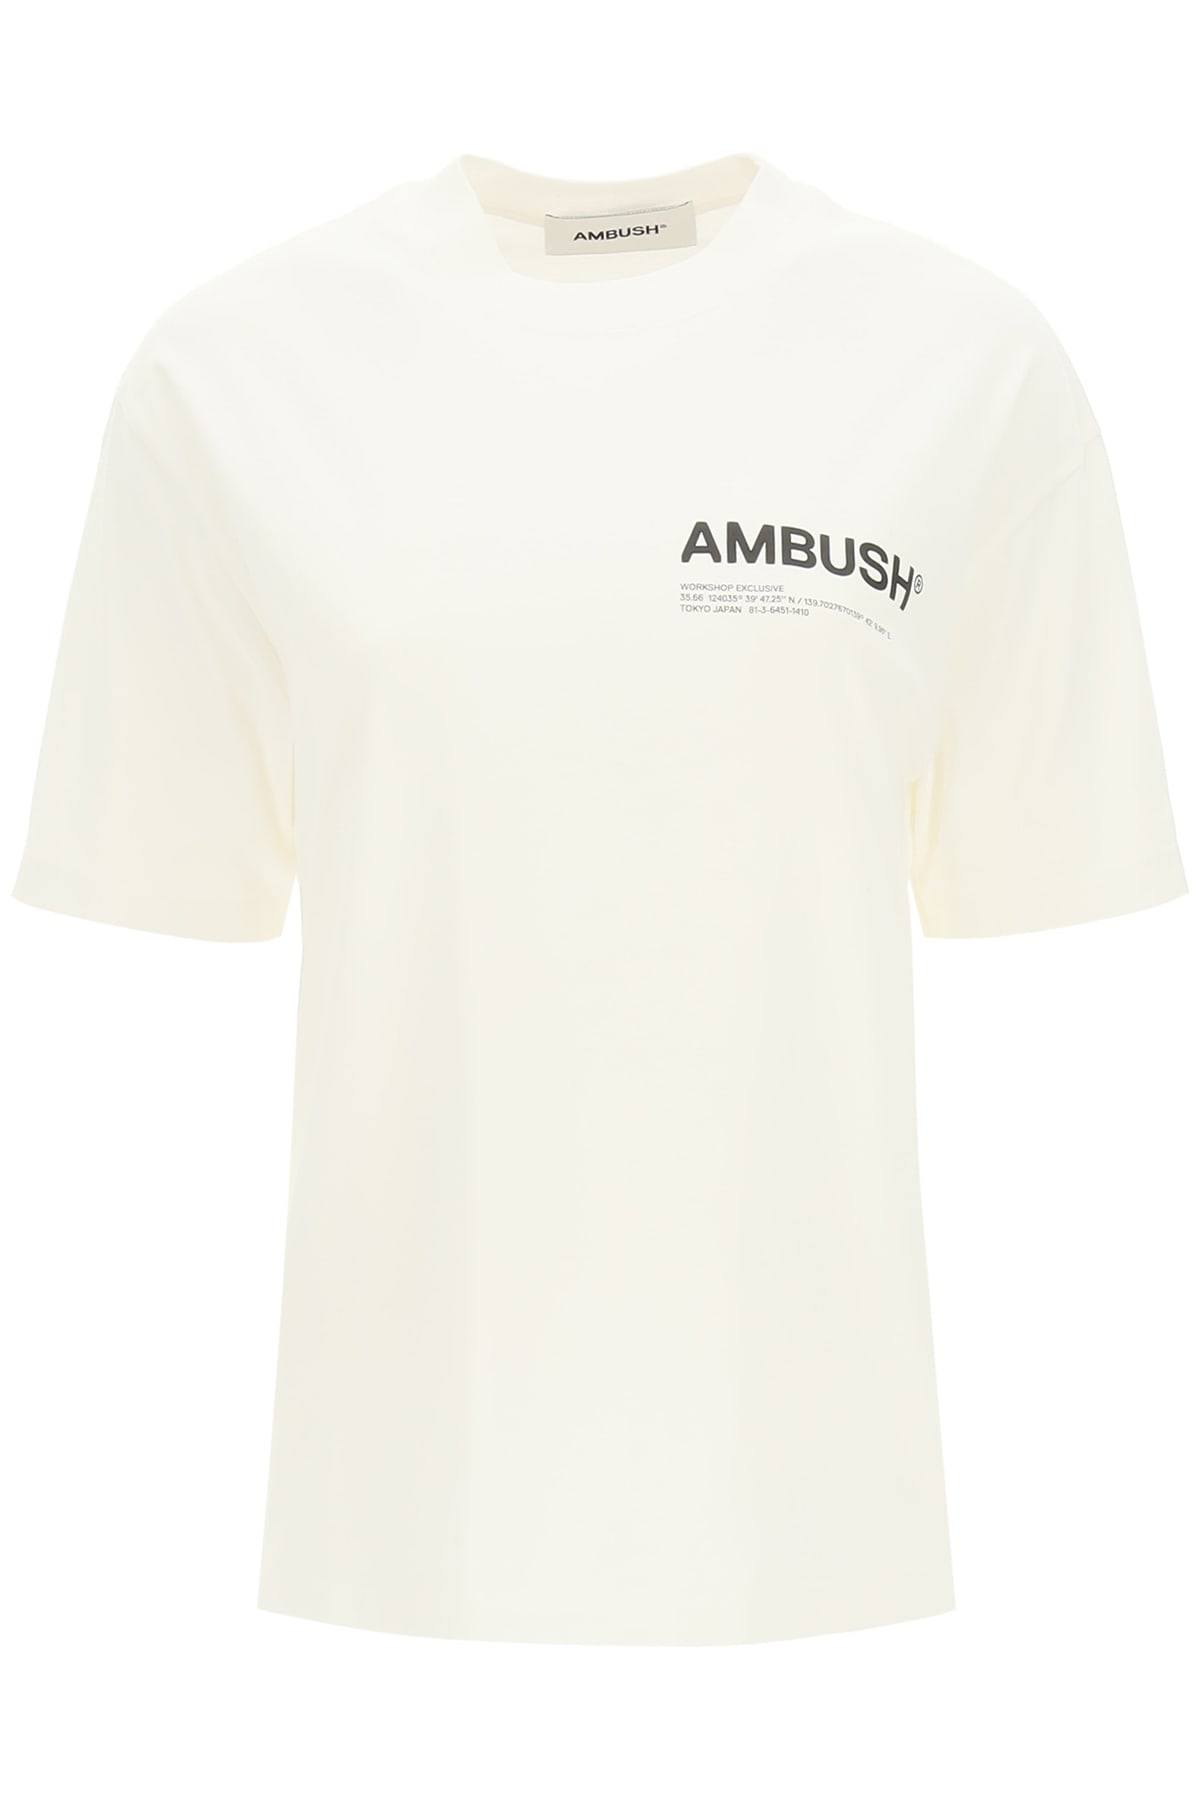 AMBUSH Coordinates Logo Printed T-shirt